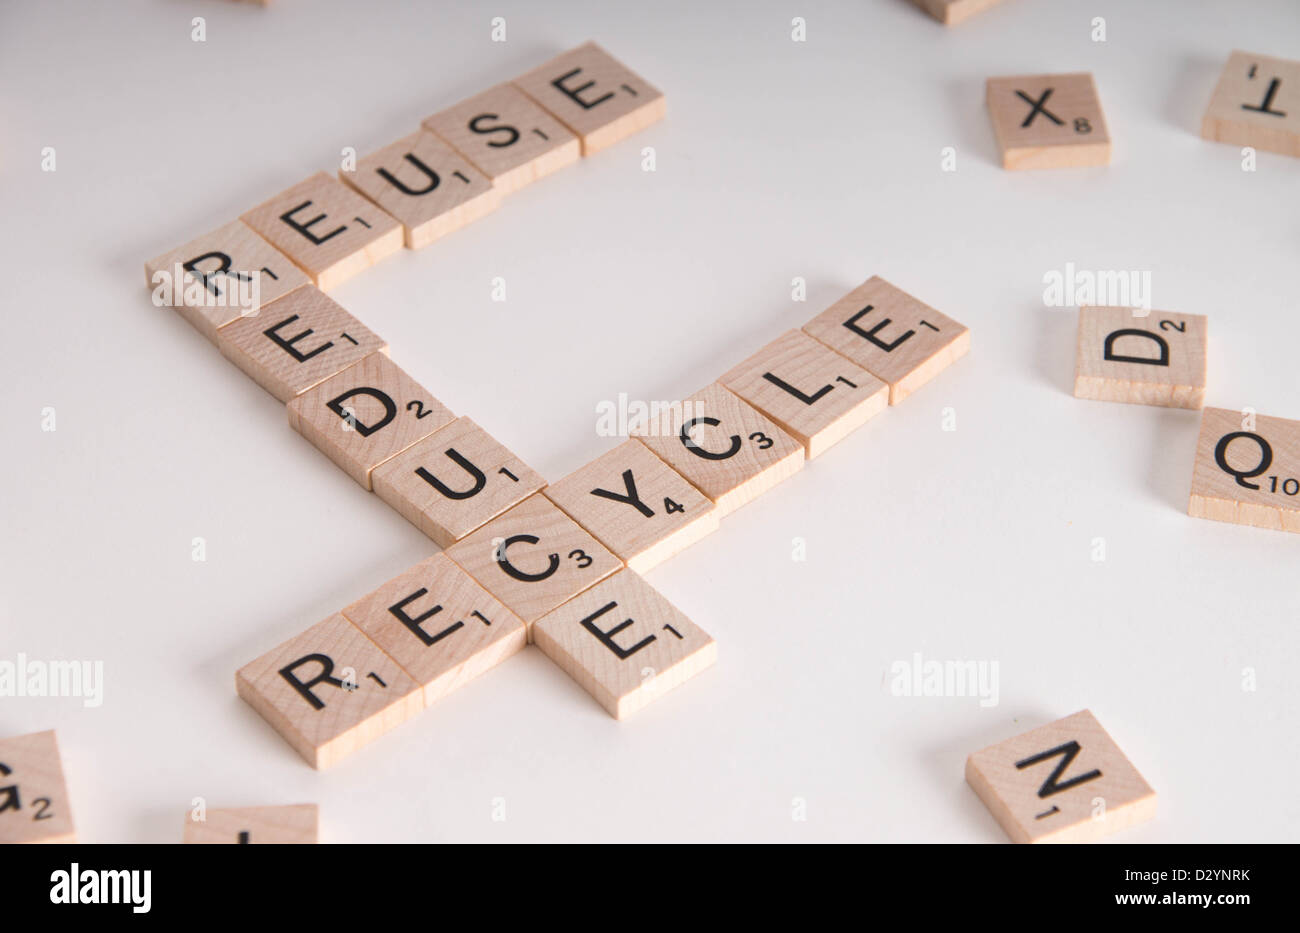 Ridurre, riutilizzare e riciclare il concetto. Scrabble in legno lettere compitare 'reduce, riutilizzare e riciclare' isolato su sfondo bianco Foto Stock